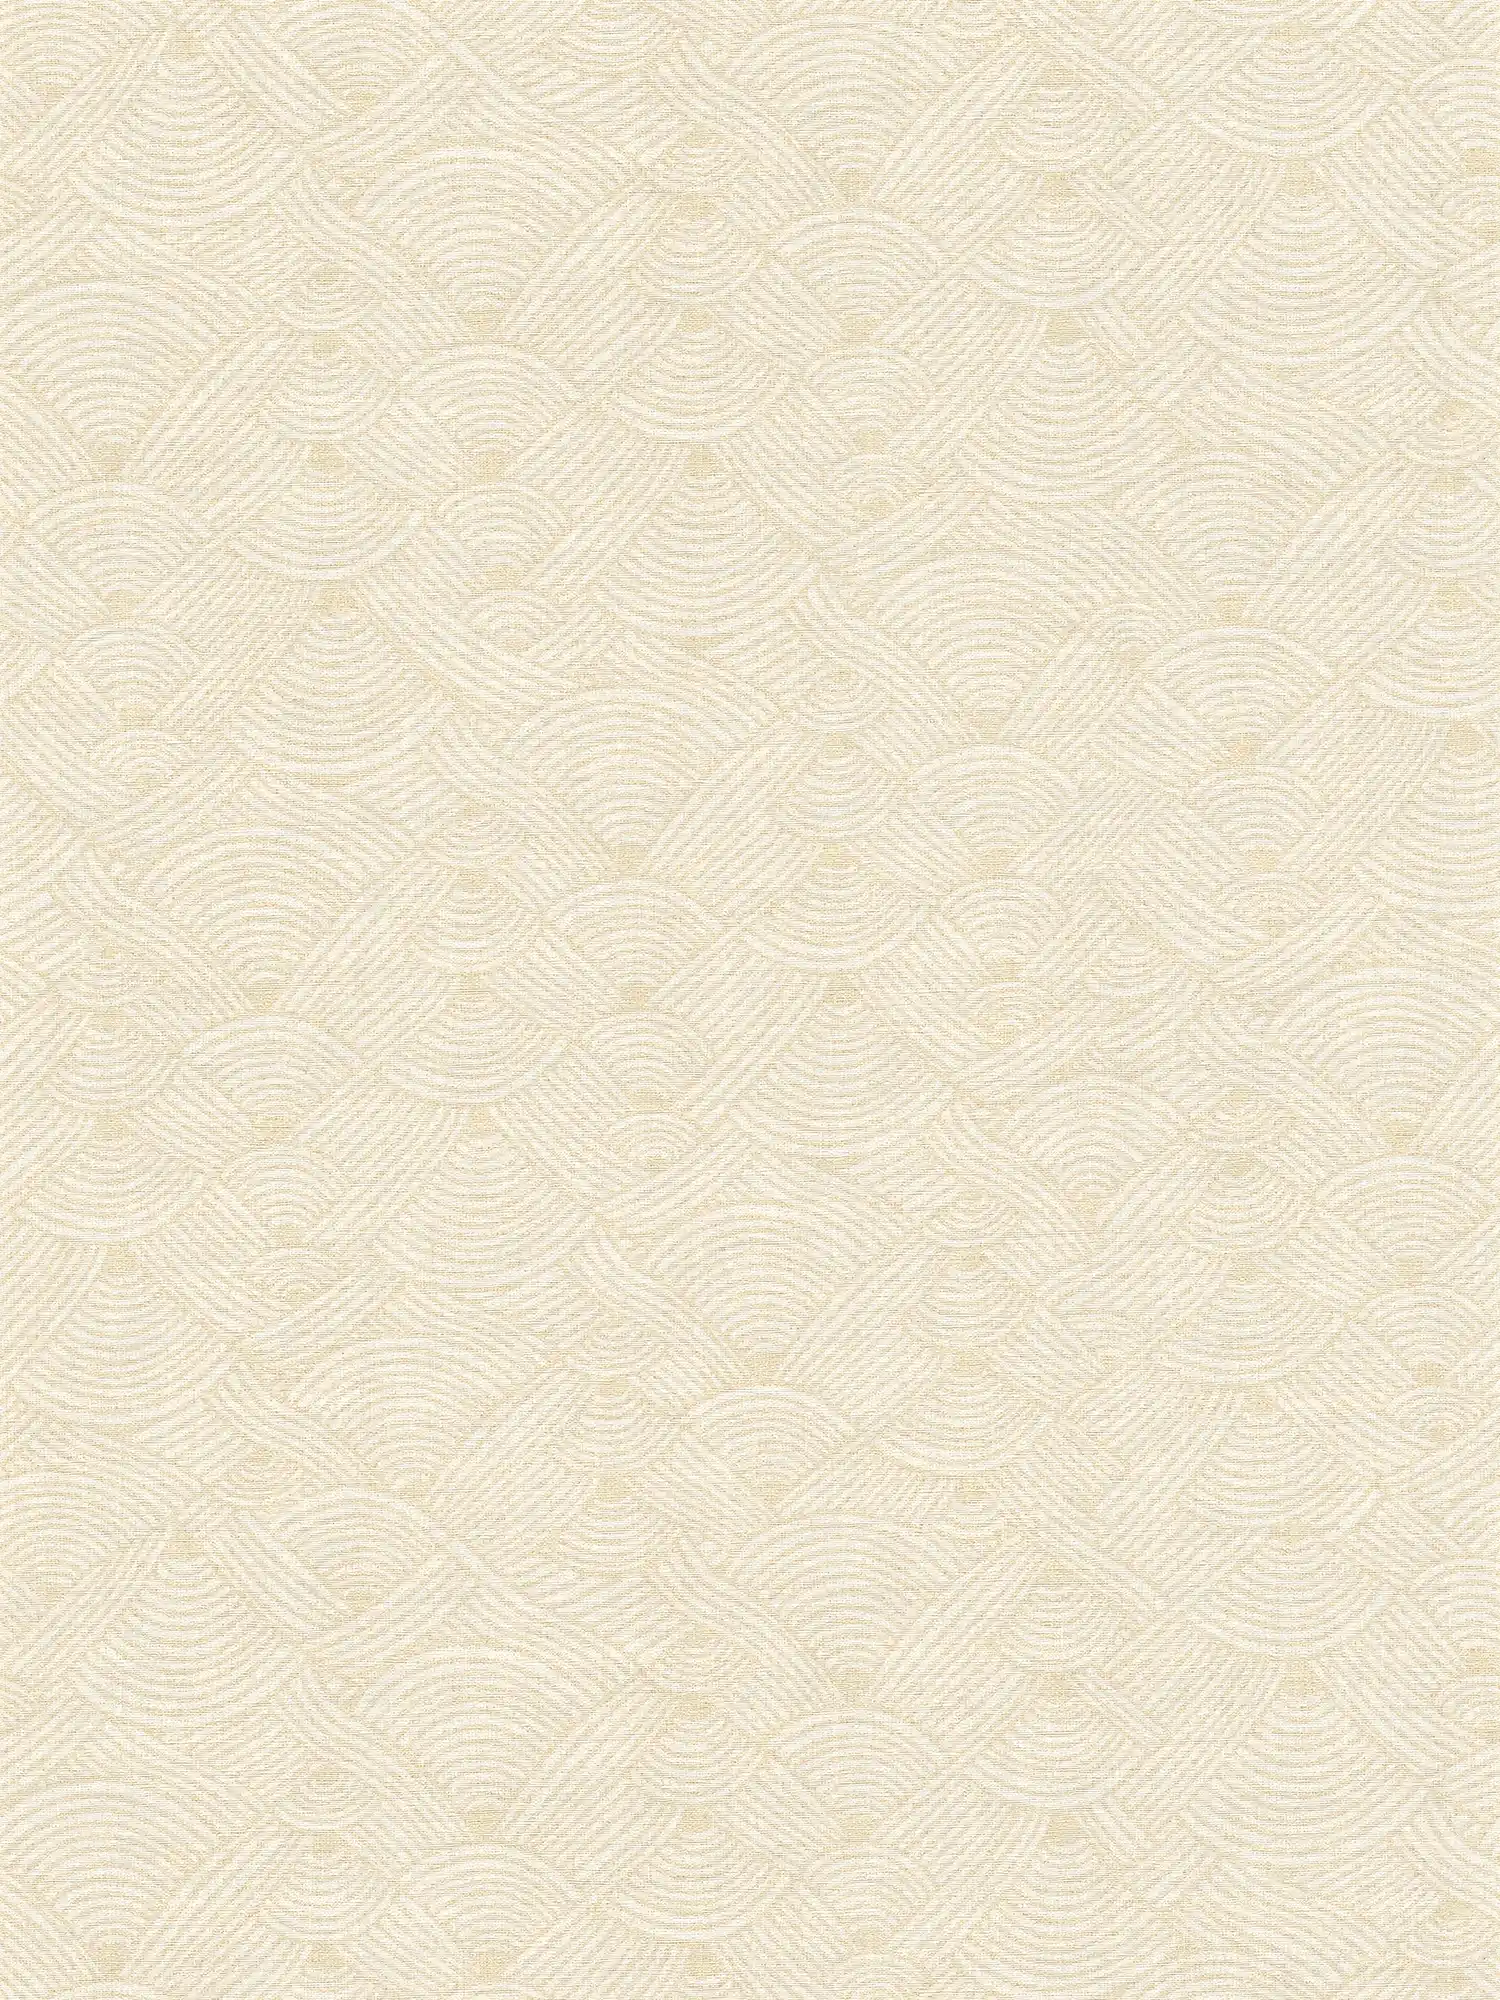 Carta da parati in tessuto non tessuto con disegno di licheni in stile etno - crema, bianco
